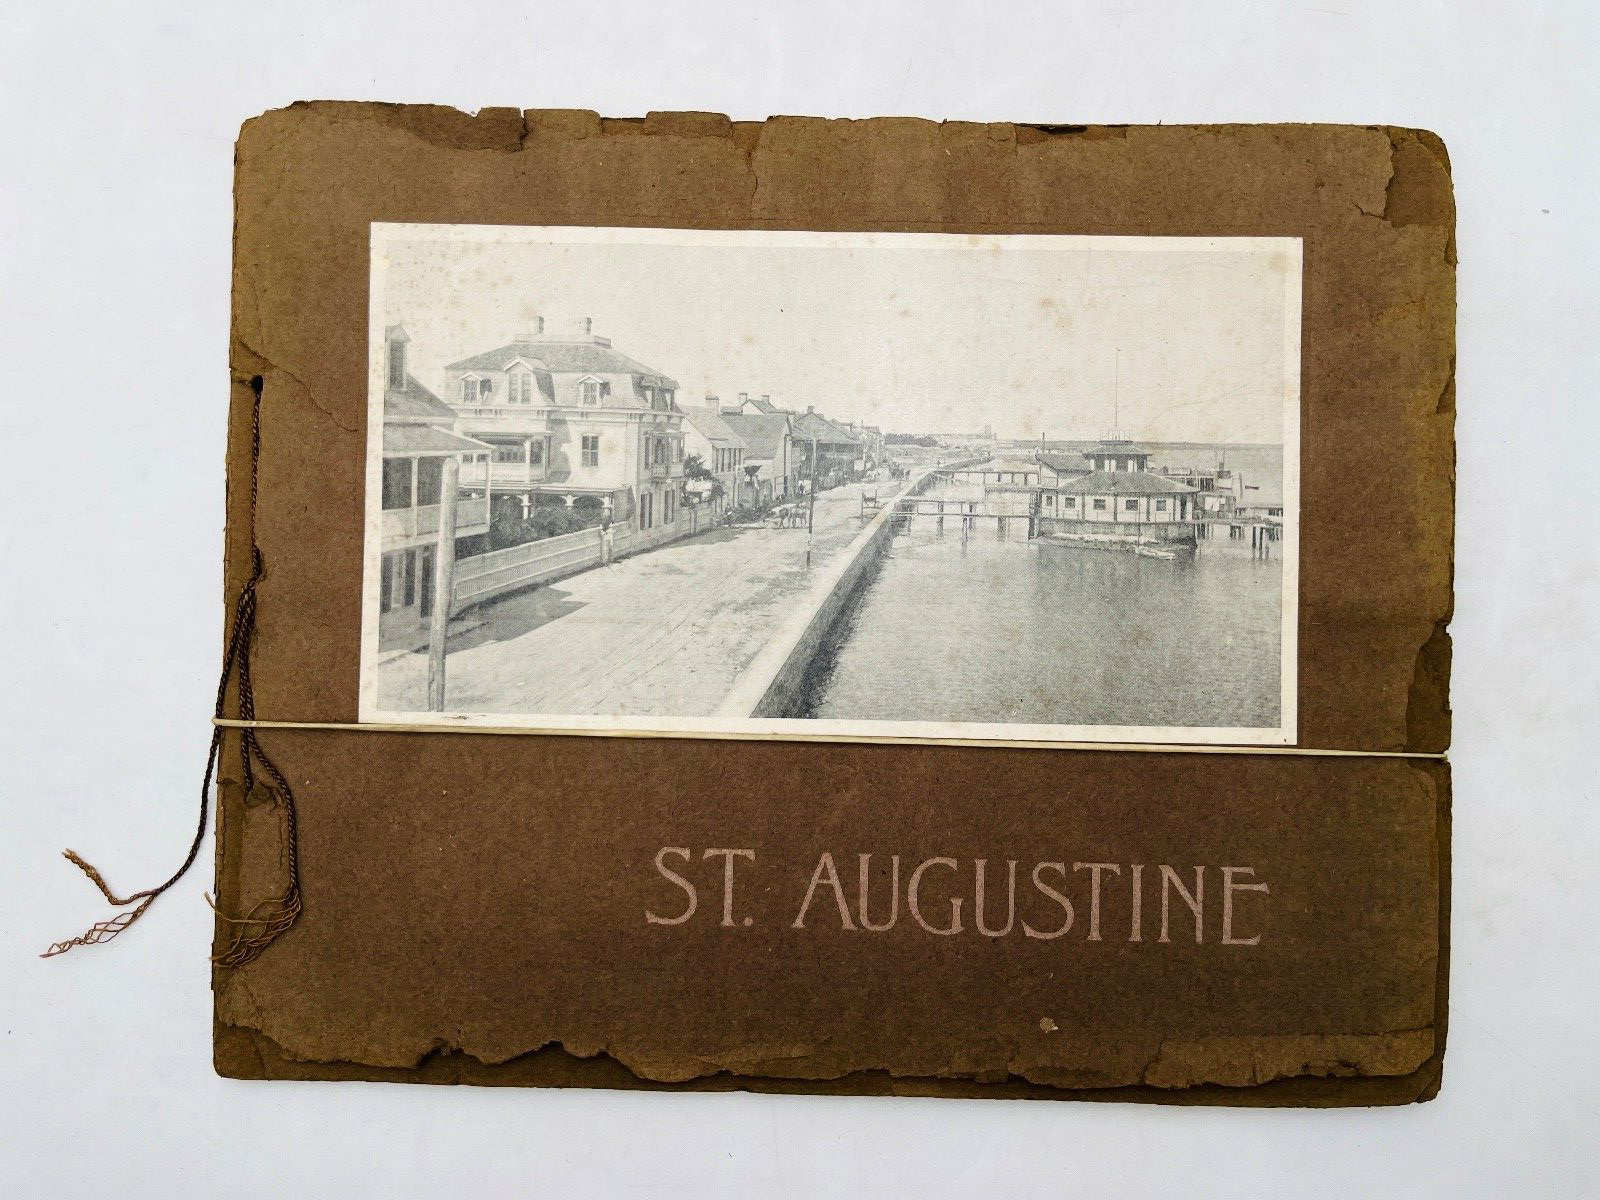 ST AUGUSTINE - PHOTO ALBUM (ca 1900)